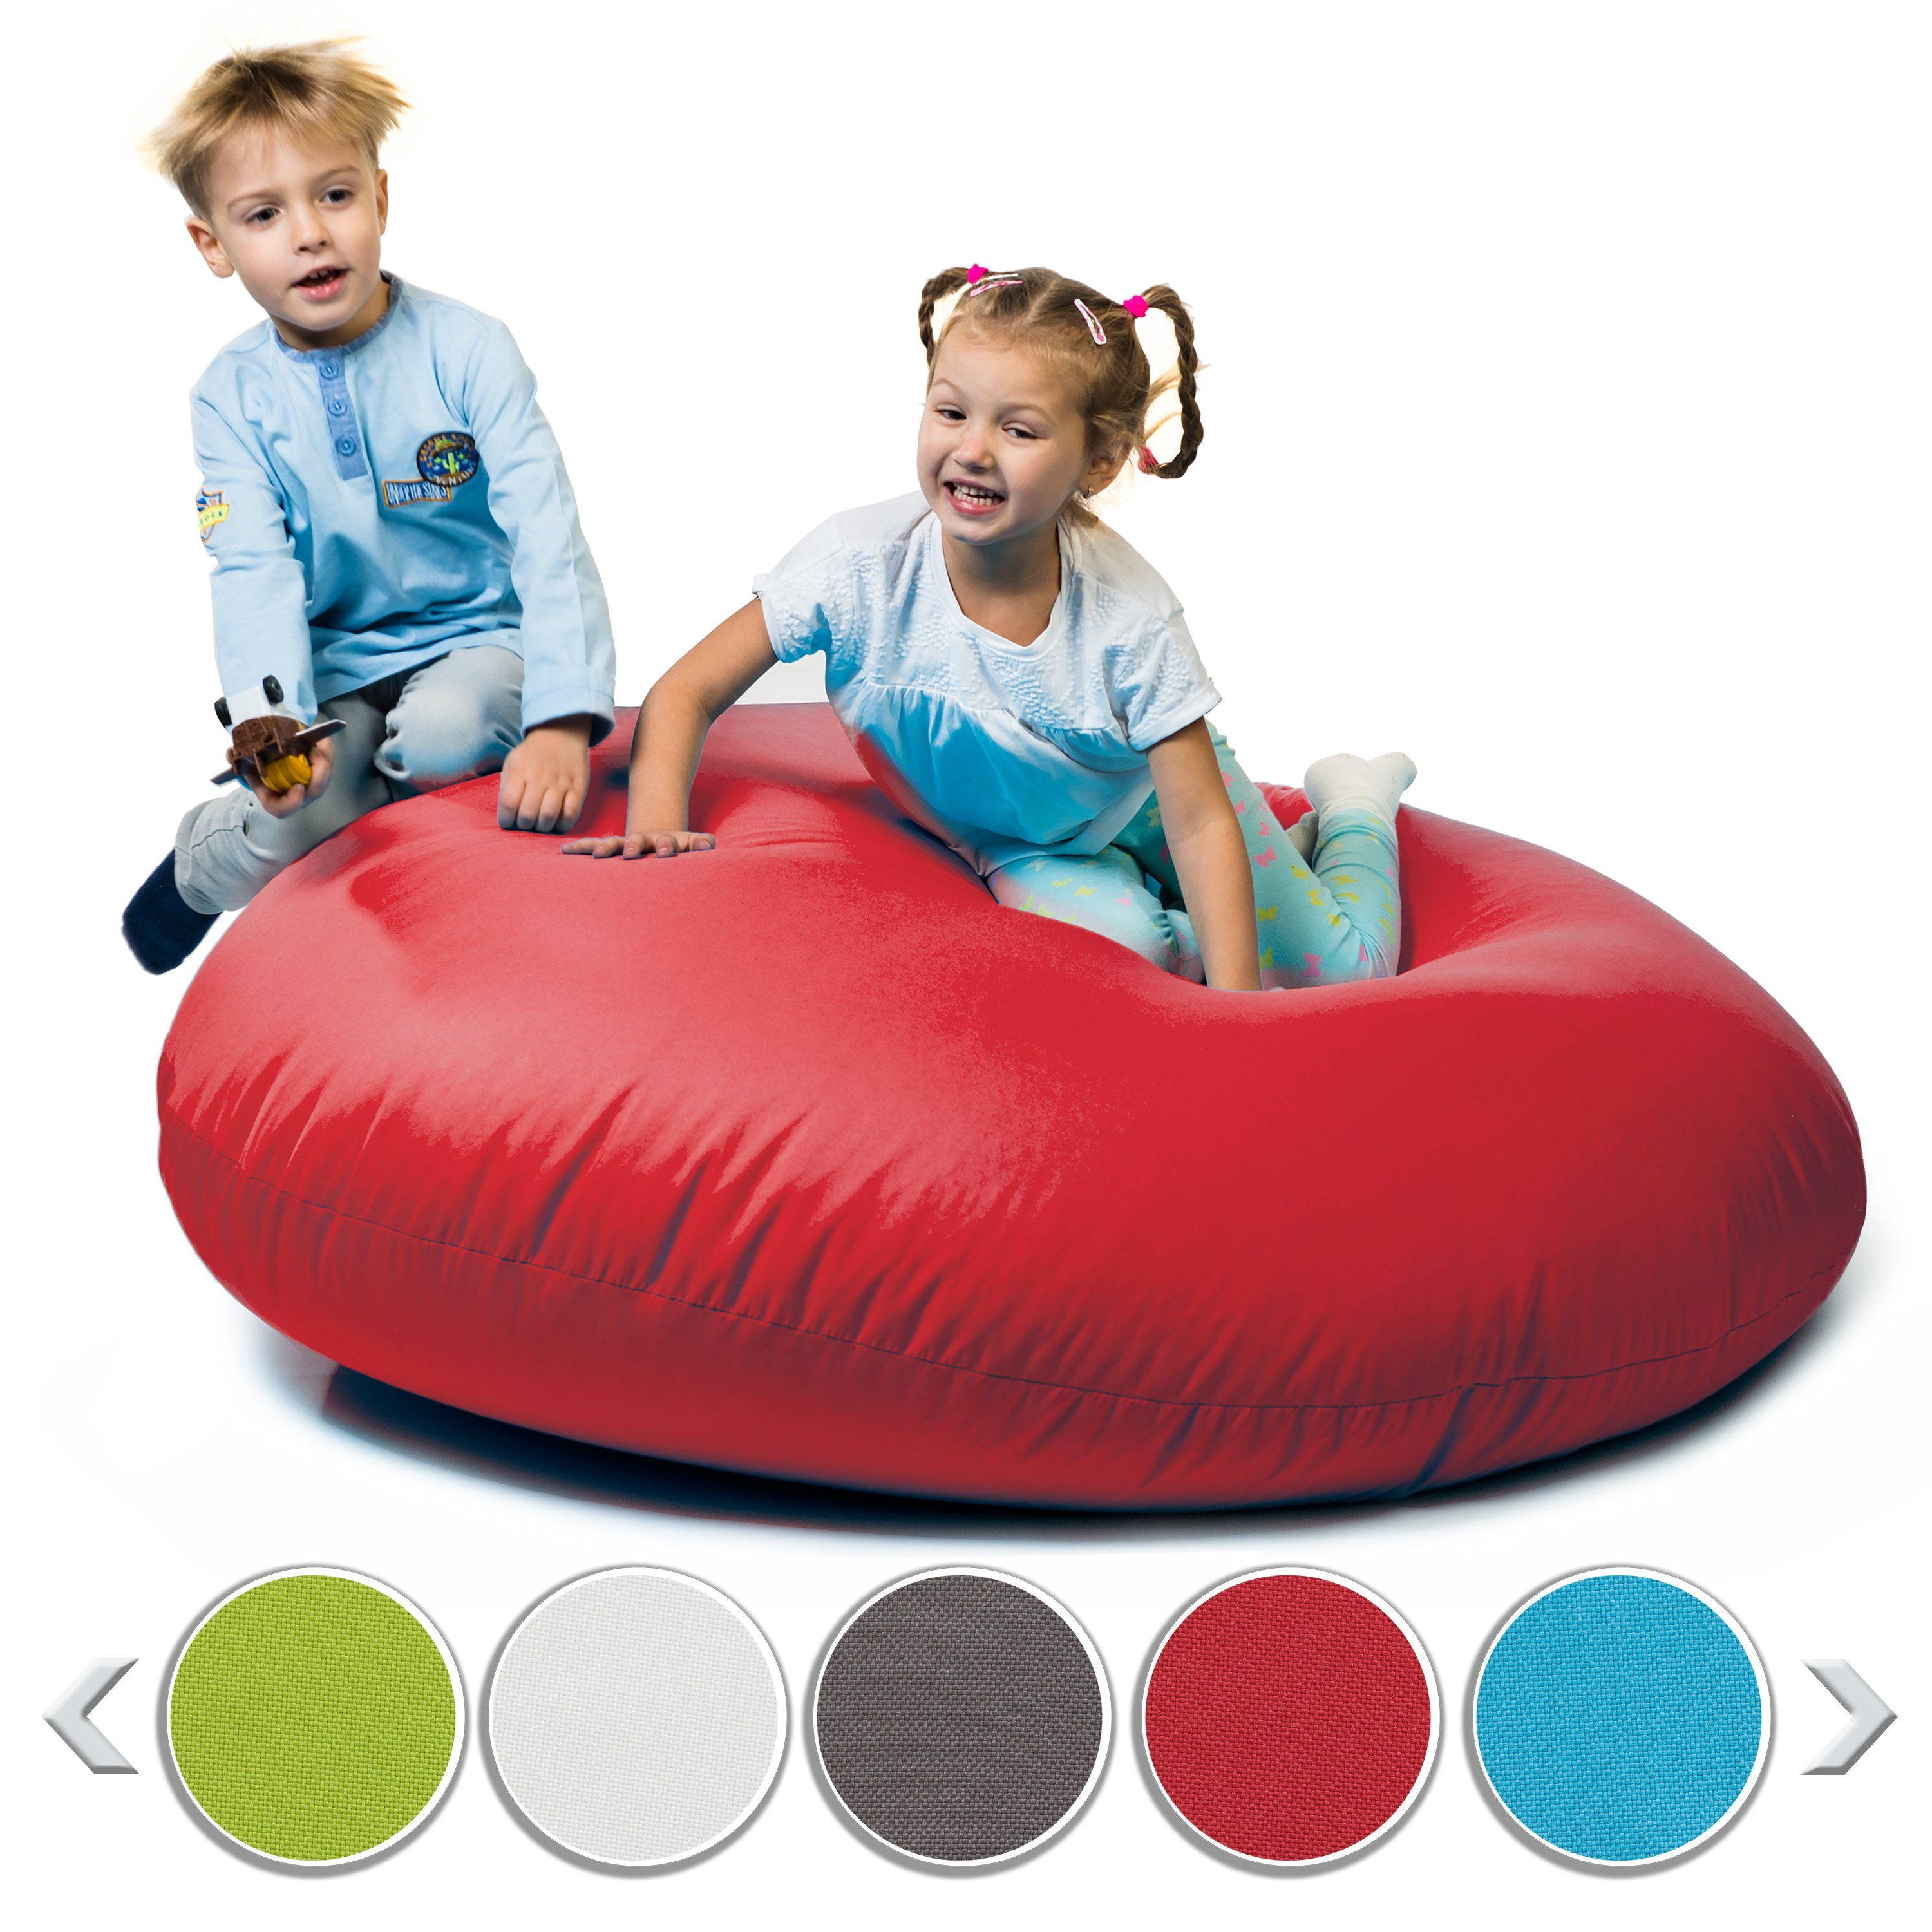 & Füllung Erwachsene Kinder und Outdoor mit Styropor sunnypillow Rot für Sitzsack Indoor